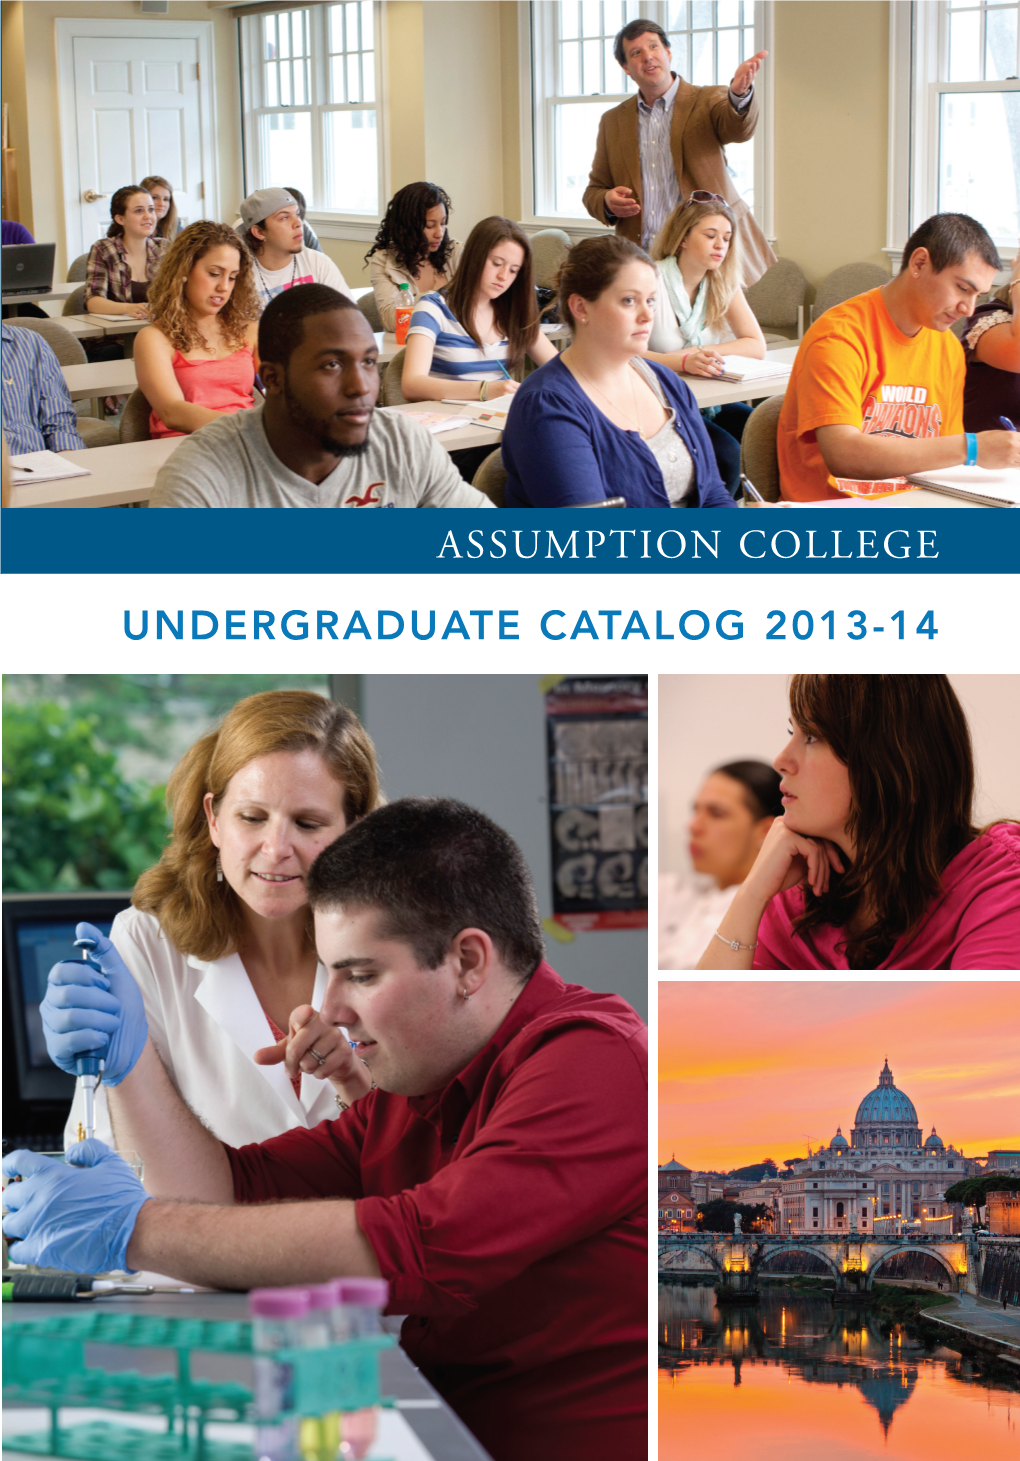 2013-2014 Undergraduate Catalog